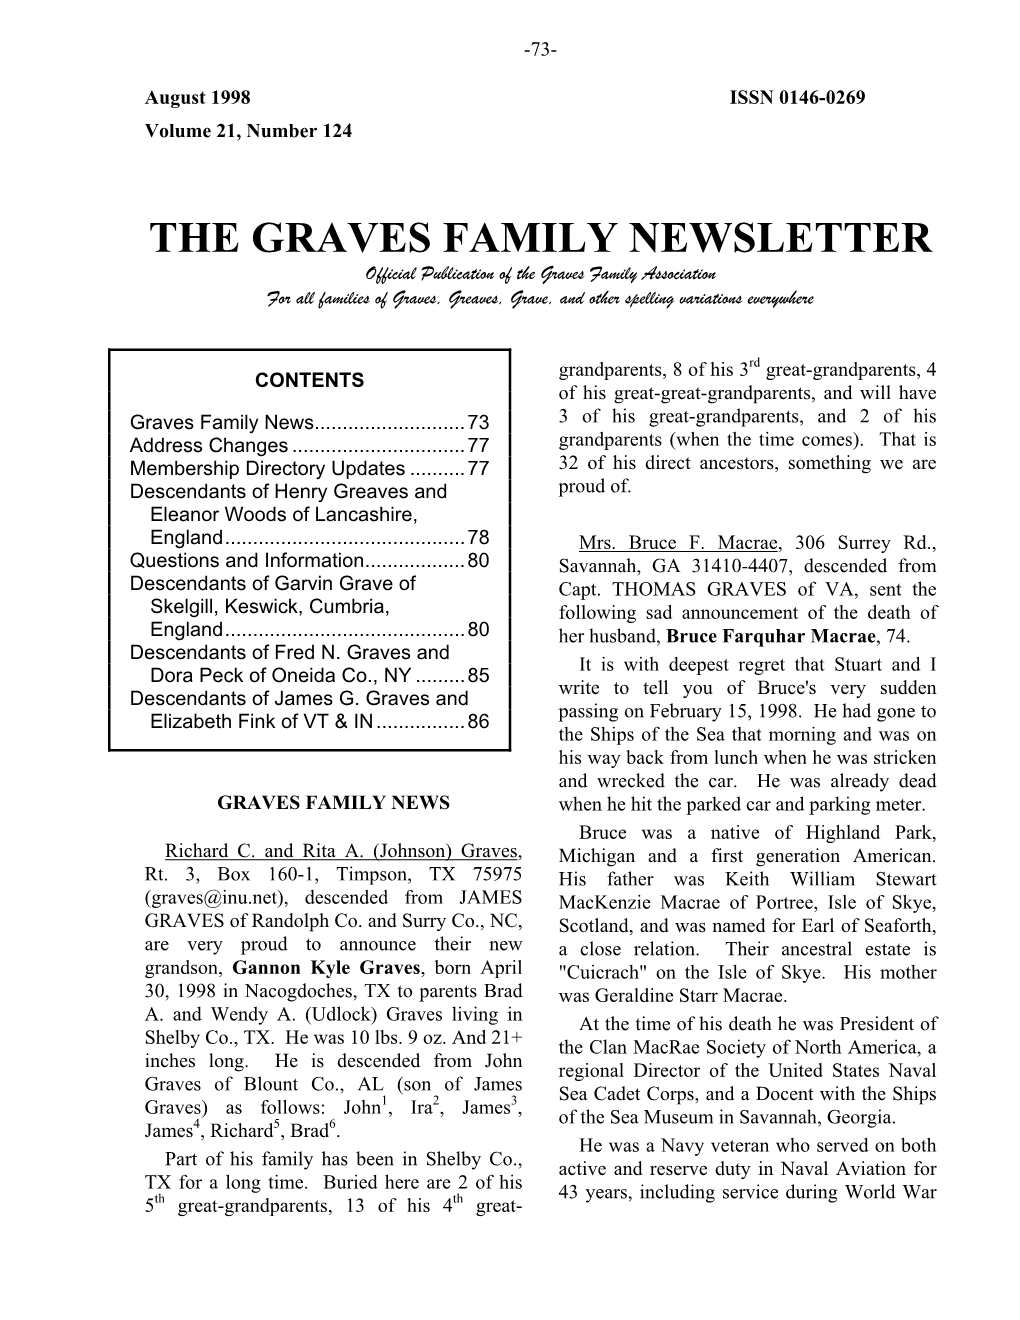 Graves Family Newsletter, Aug. 1997